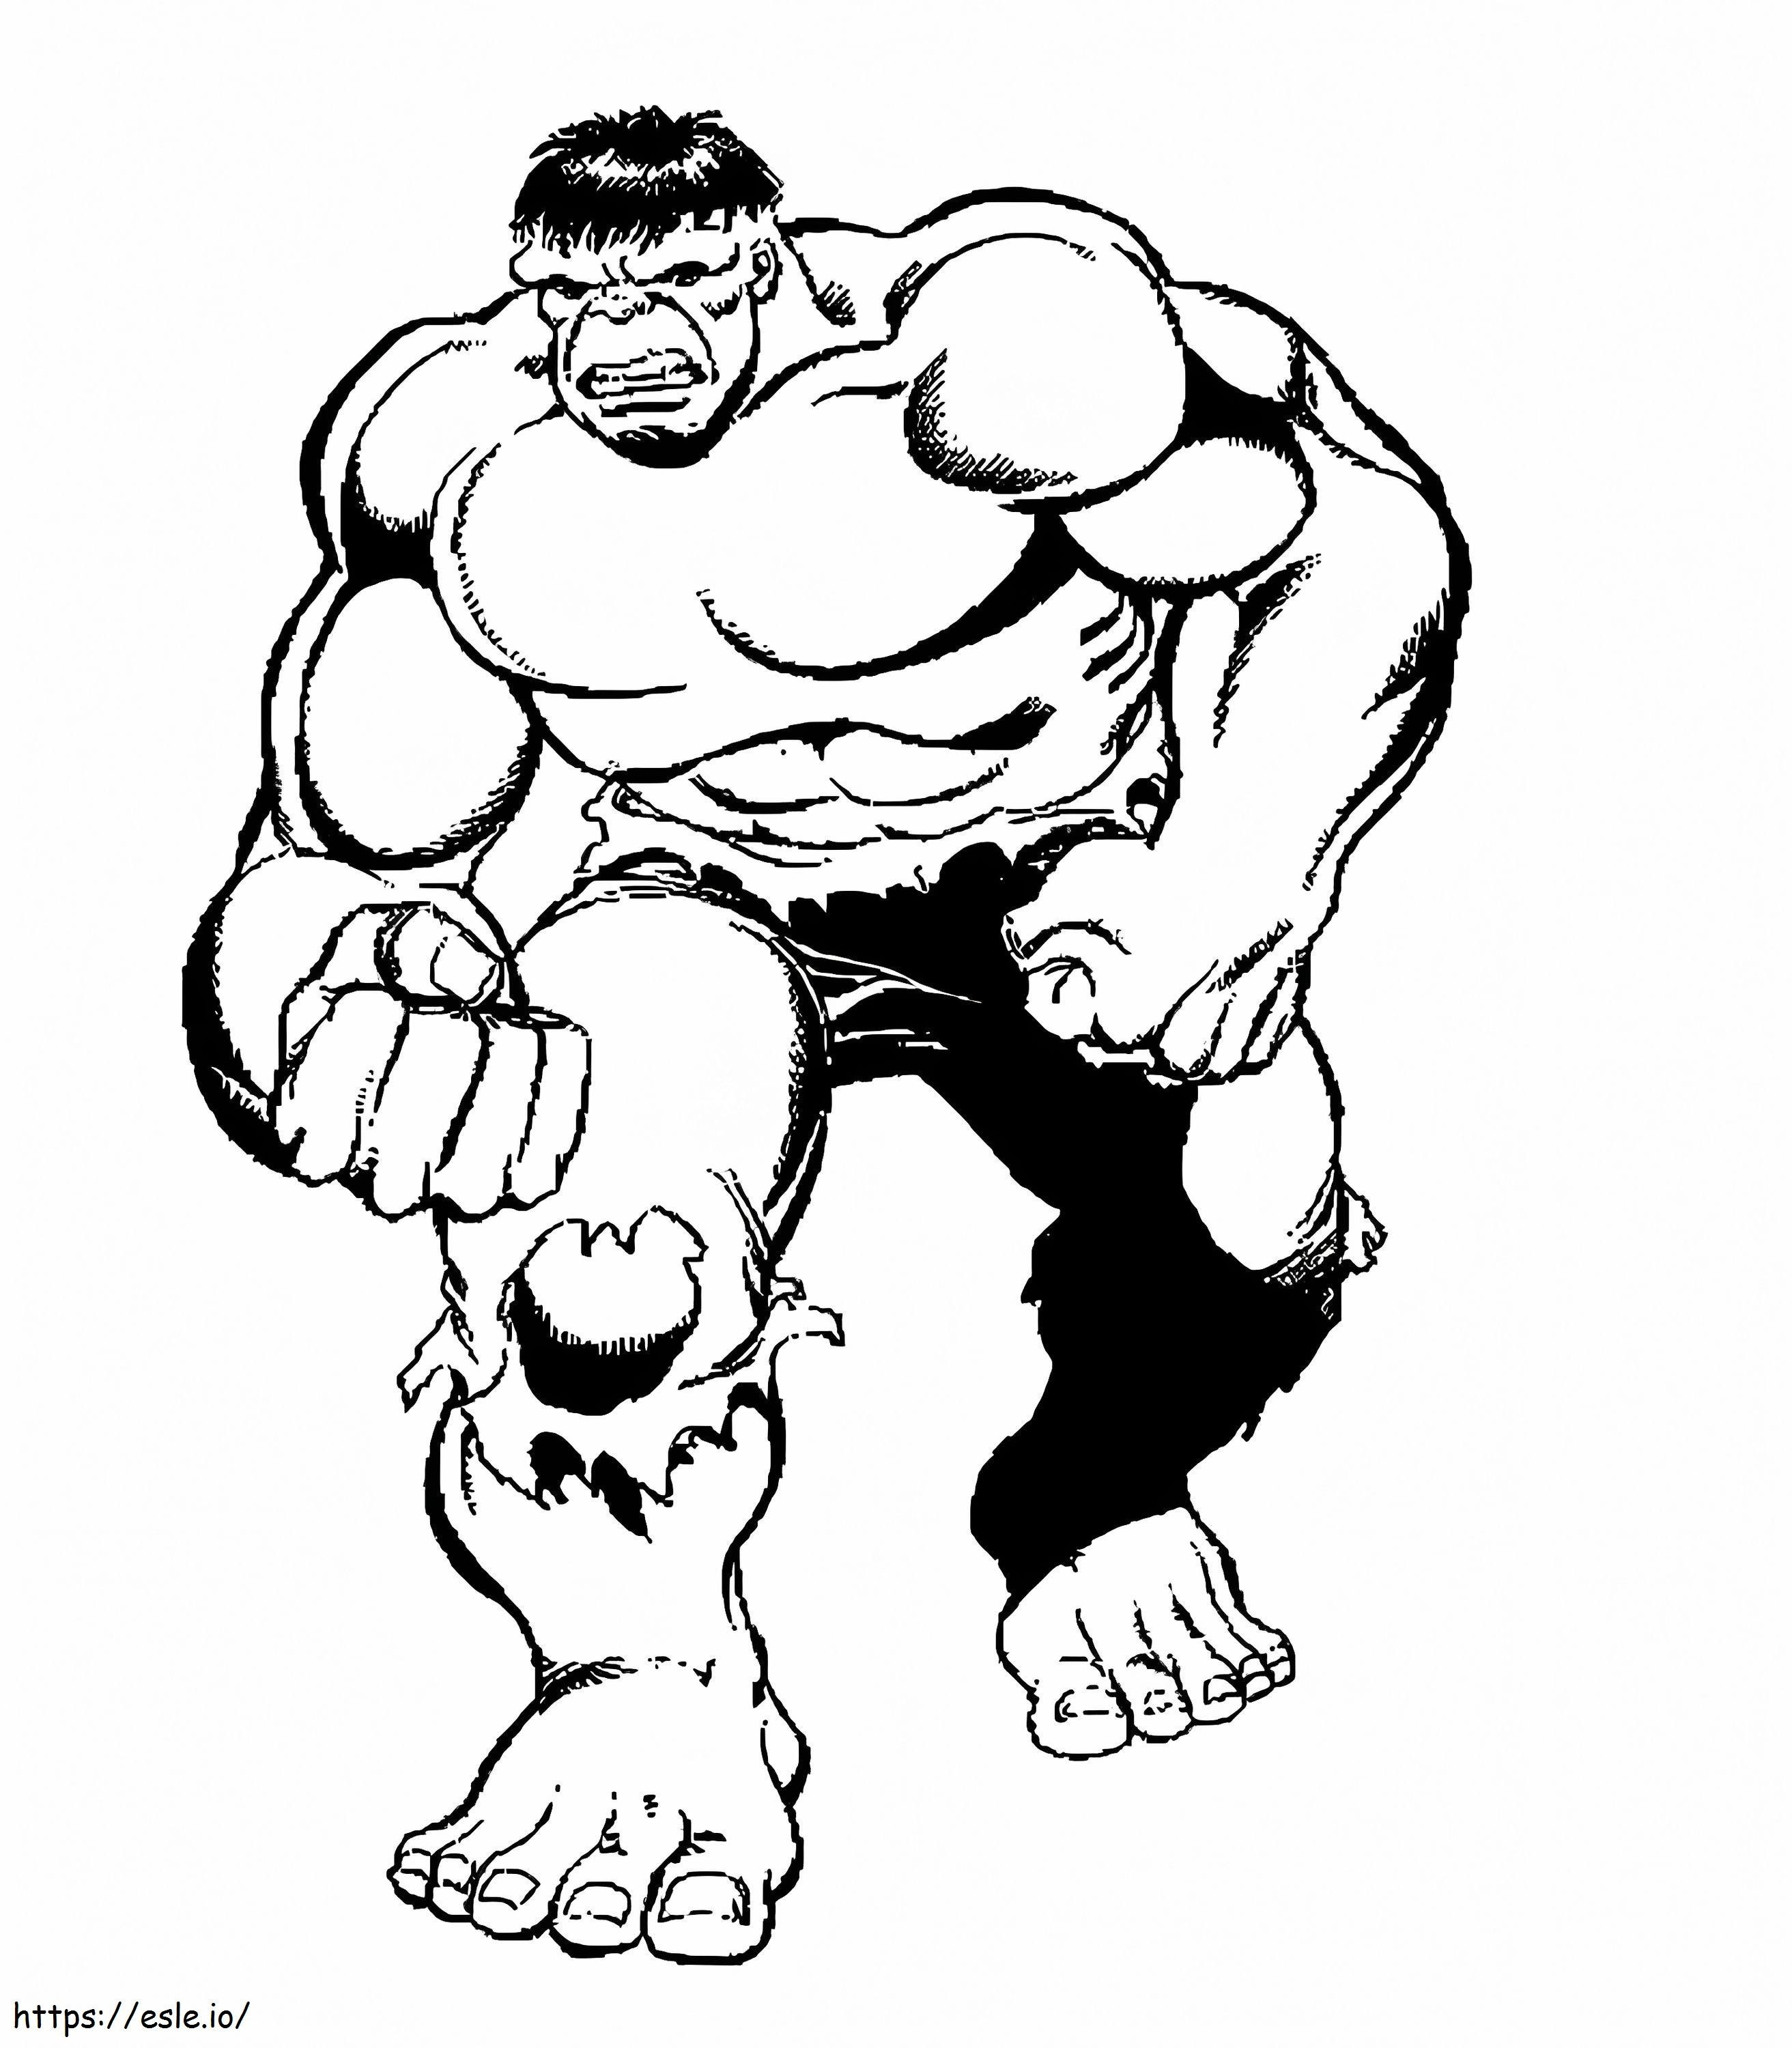 Hulk se plimbă de colorat